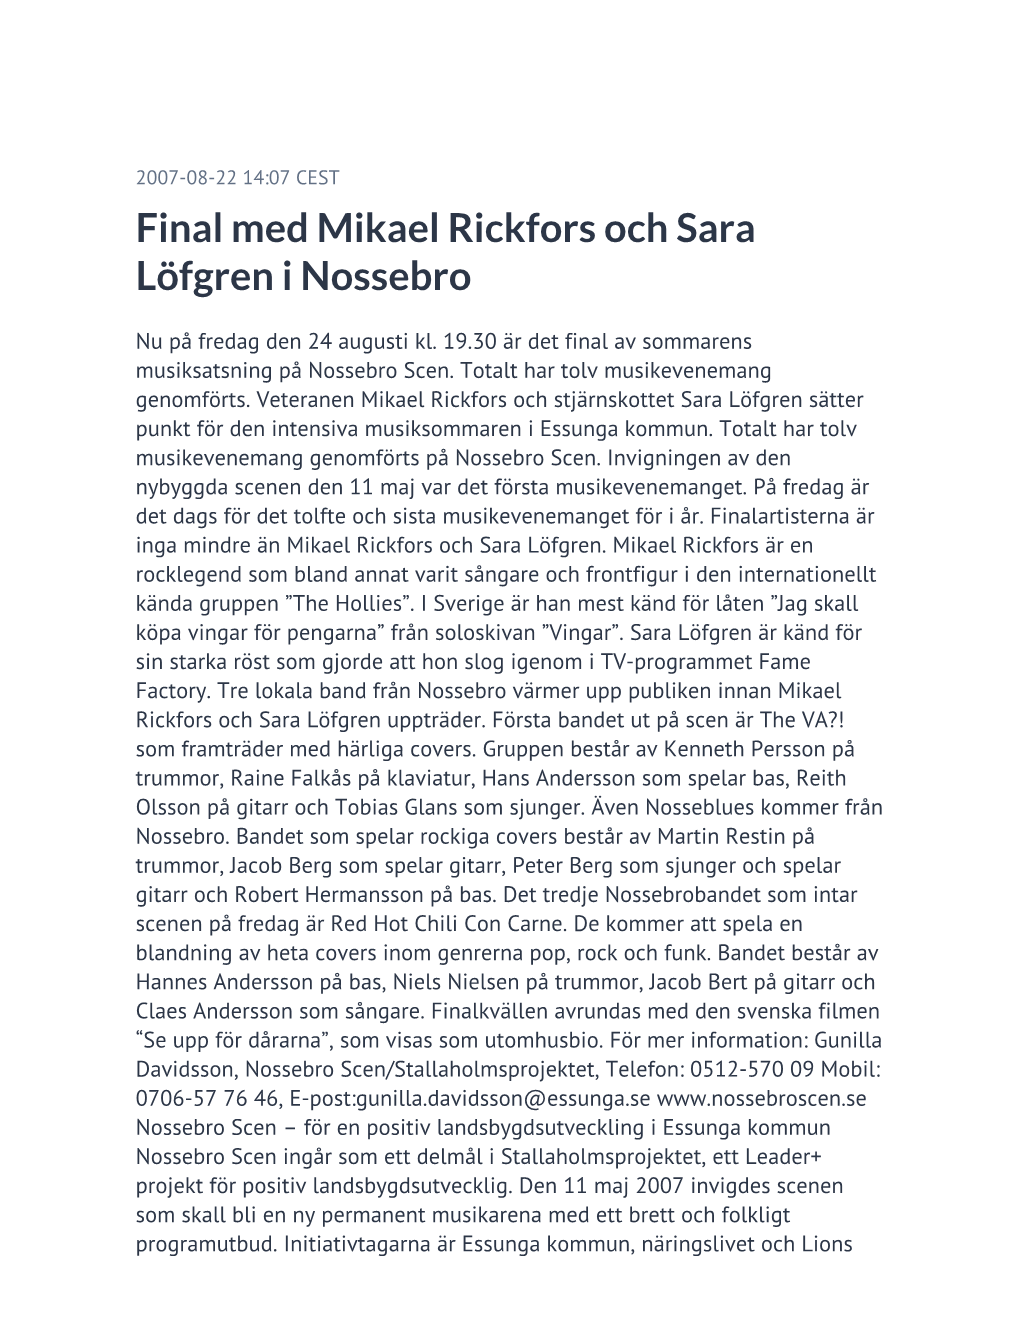 Final Med Mikael Rickfors Och Sara Löfgren I Nossebro